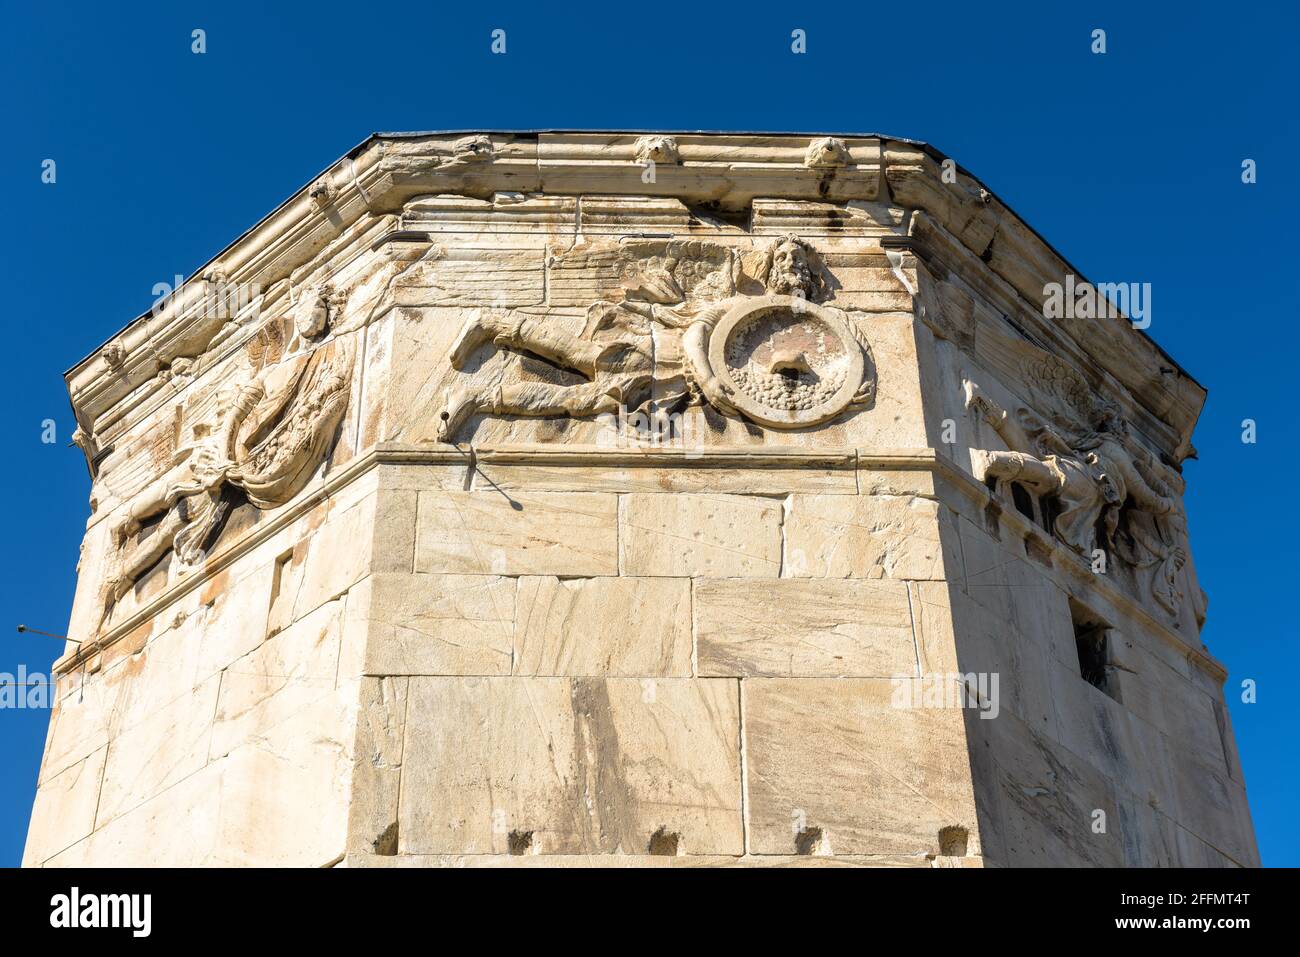 Torre dei Venti o Aerides primo piano, Atene, Grecia, Europa. E' un vecchio punto di riferimento di Atene. Antico edificio greco decorato con immagini in rilievo ad Athen Foto Stock